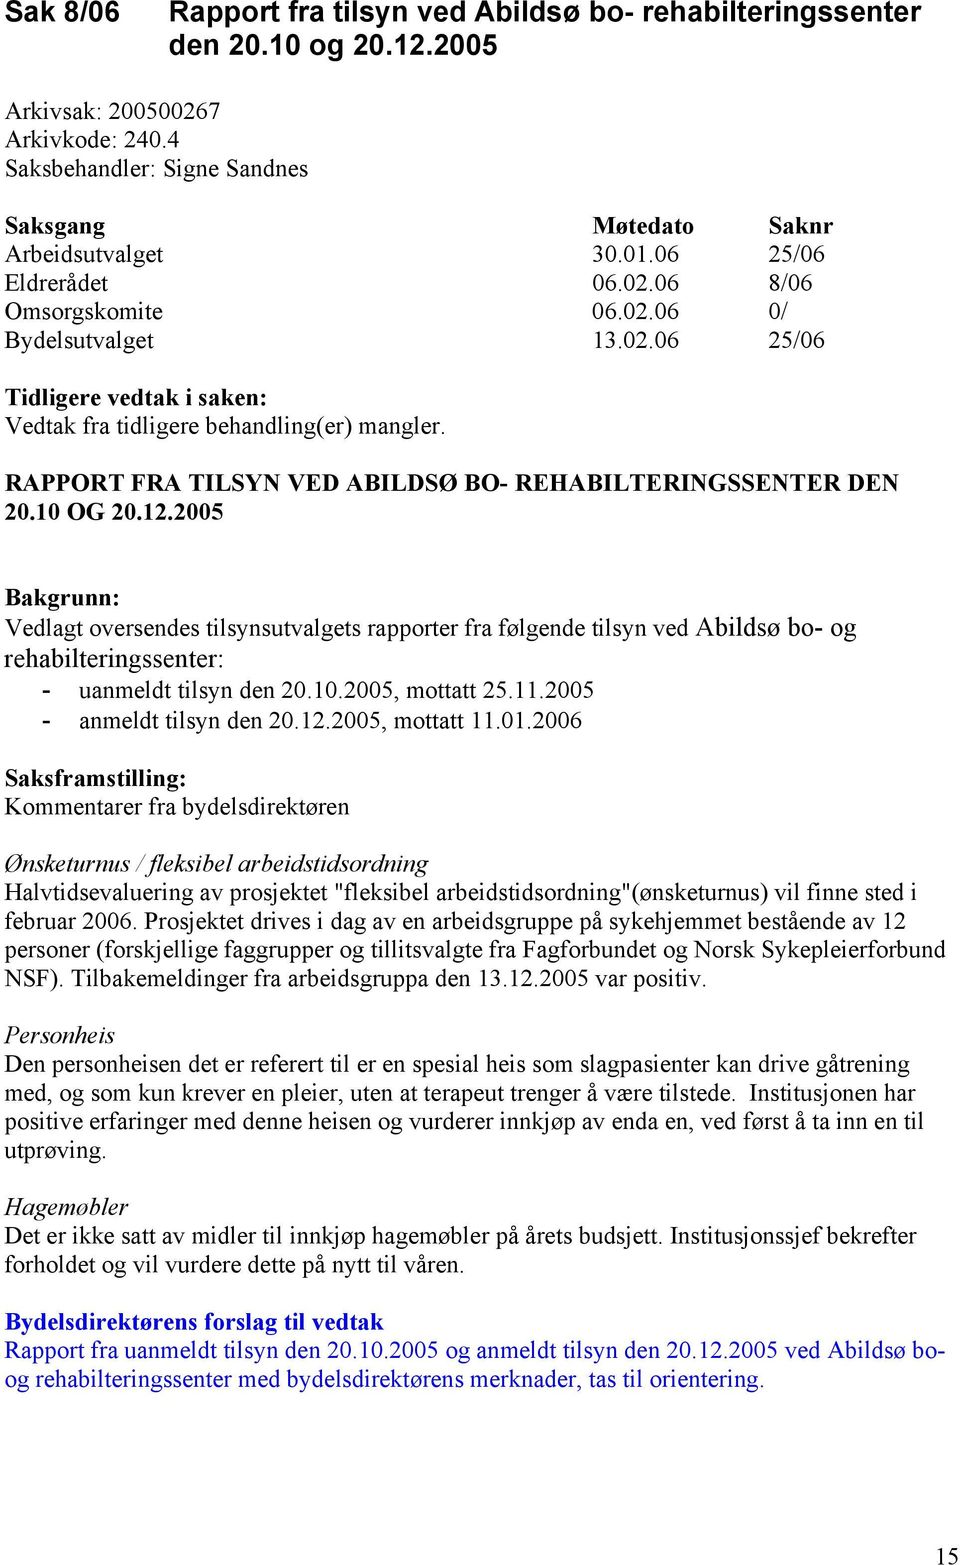 2005 Bakgrunn: Vedlagt oversendes tilsynsutvalgets rapporter fra følgende tilsyn ved Abildsø bo- og rehabilteringssenter: - uanmeldt tilsyn den 20.10.2005, mottatt 25.11.2005 - anmeldt tilsyn den 20.